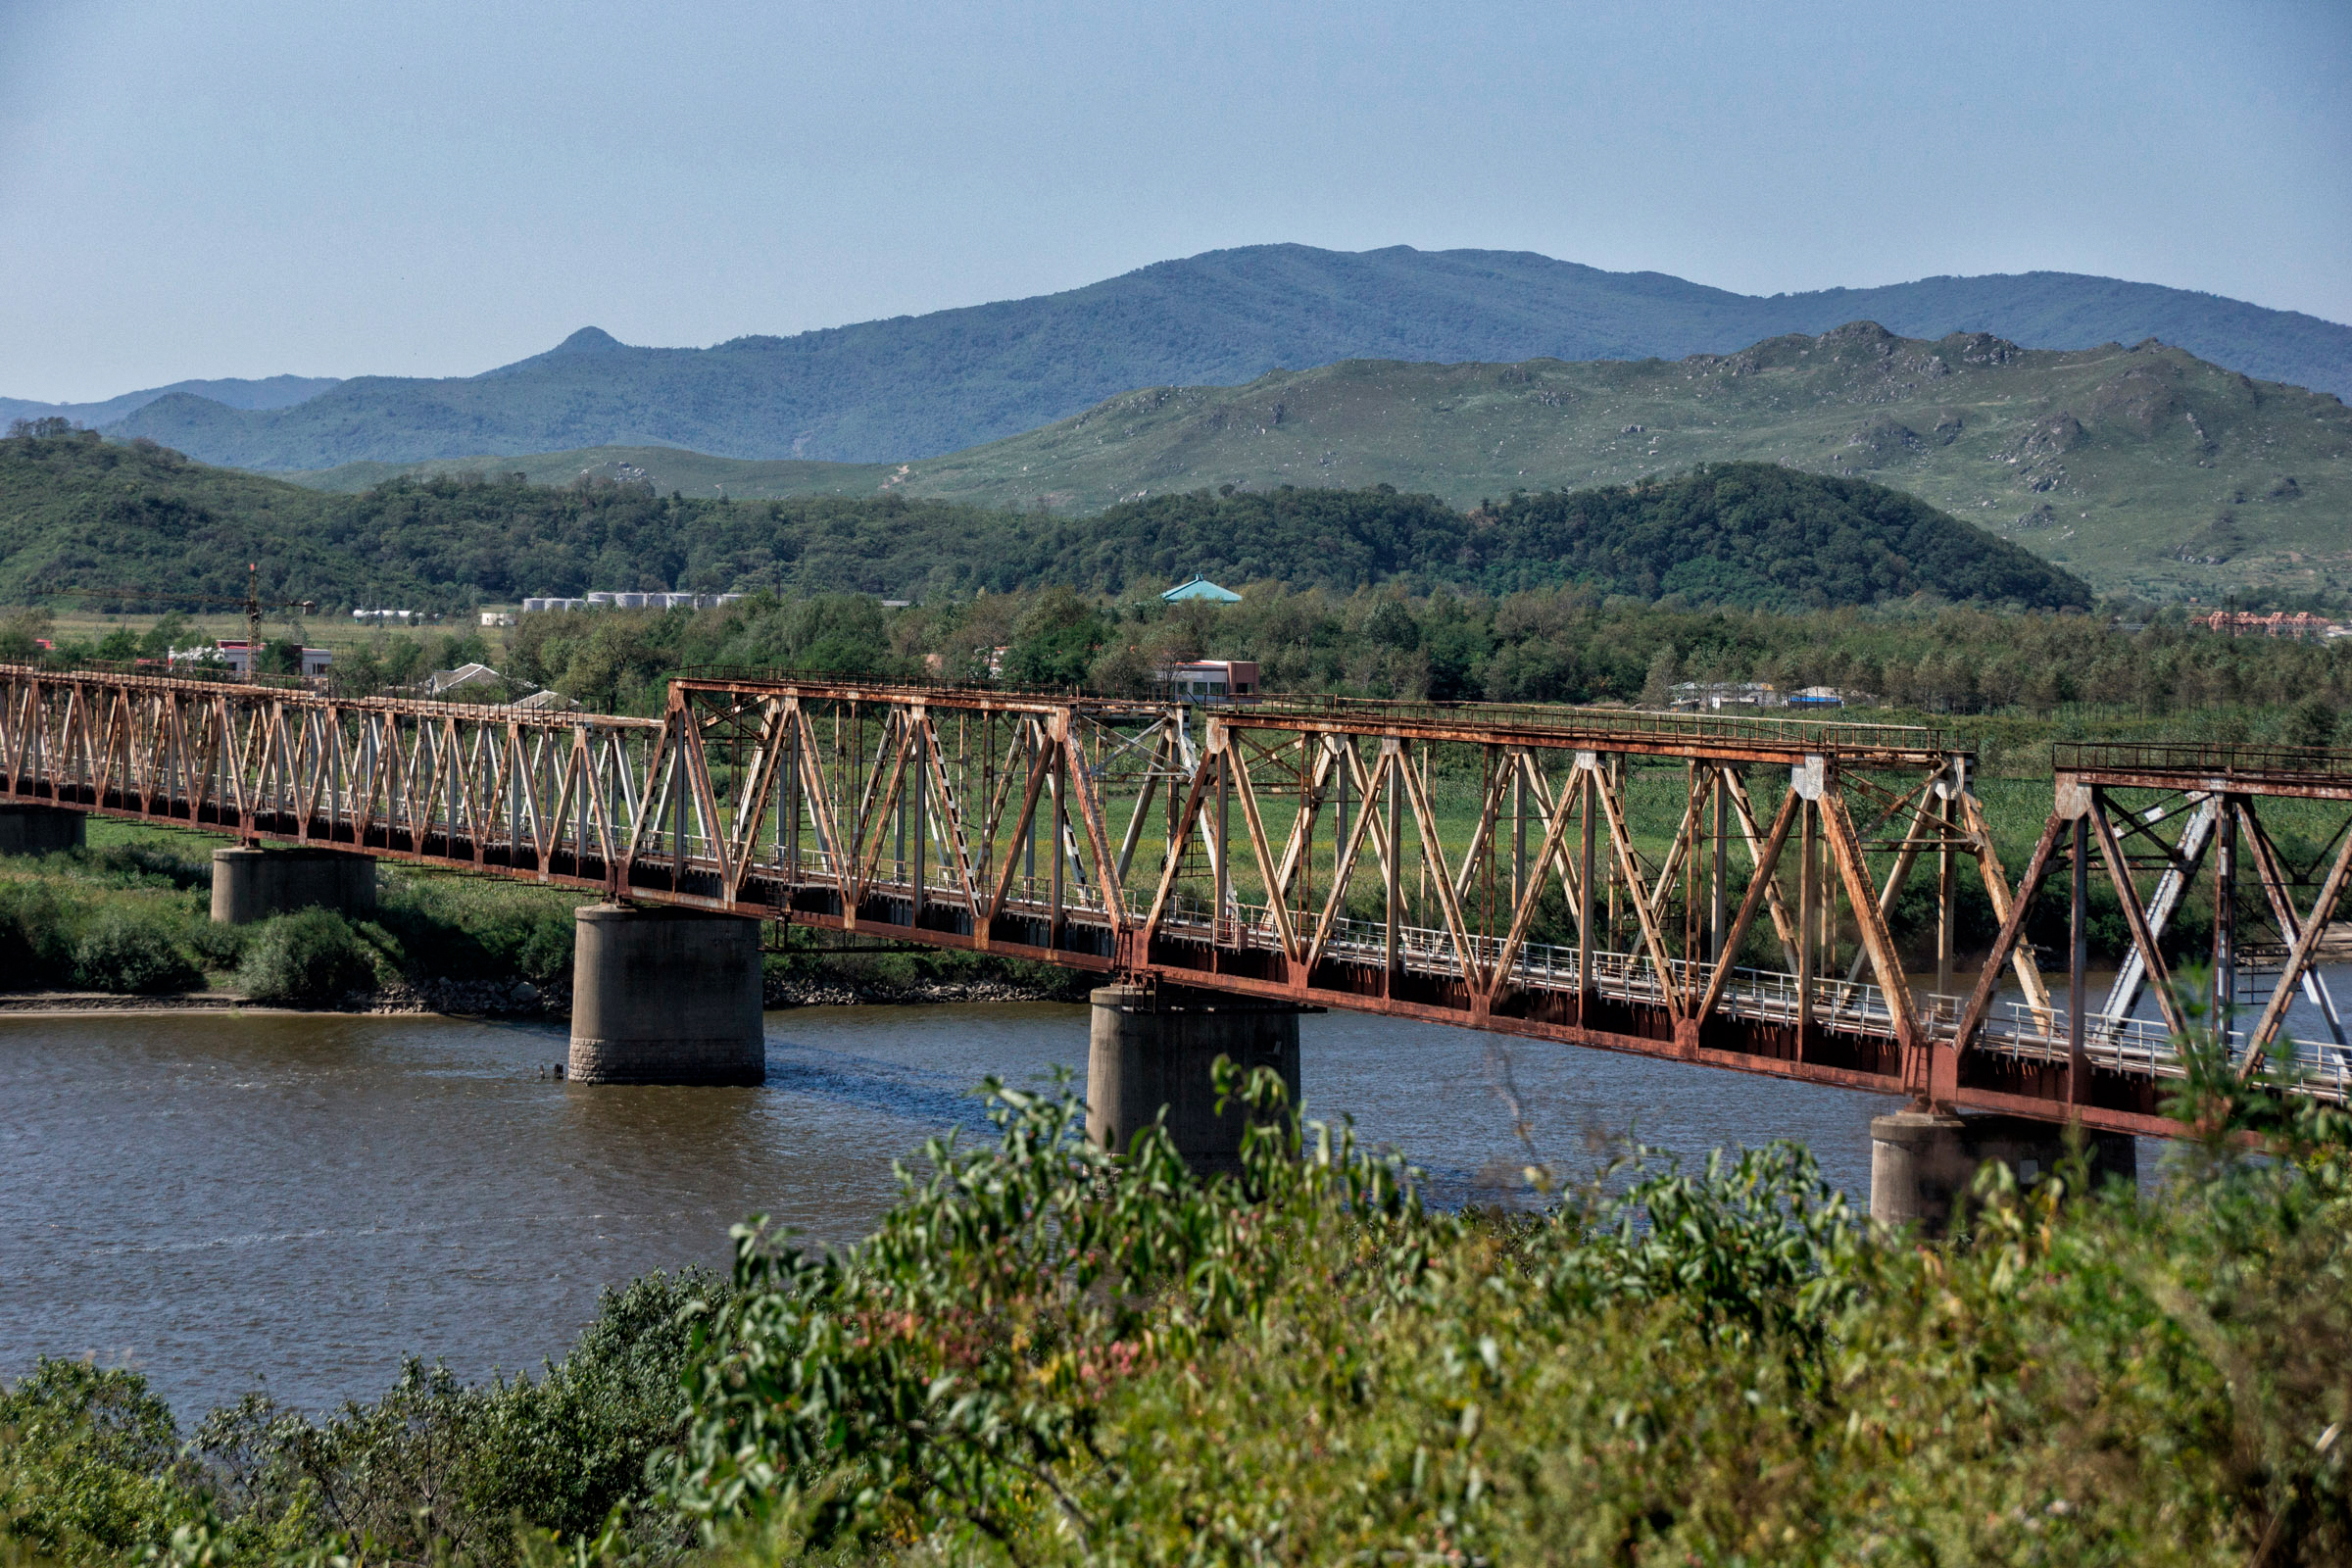 В 2001 и 2011 годах Хасан проезжал на своем бронепоезде Ким Чен Ир во время официальных визитов в Россию. Состав пересекал мост Дружбы, который соединяет берега реки Туманной (Туманган) &mdash; по ее фарватеру проходит граница. По мосту в Россию попадают и пассажирские поезда с рабочими из Северной Кореи. Две страны связывает только этот железнодорожный мост, автомобильной дороги между КНДР и Россией нет.